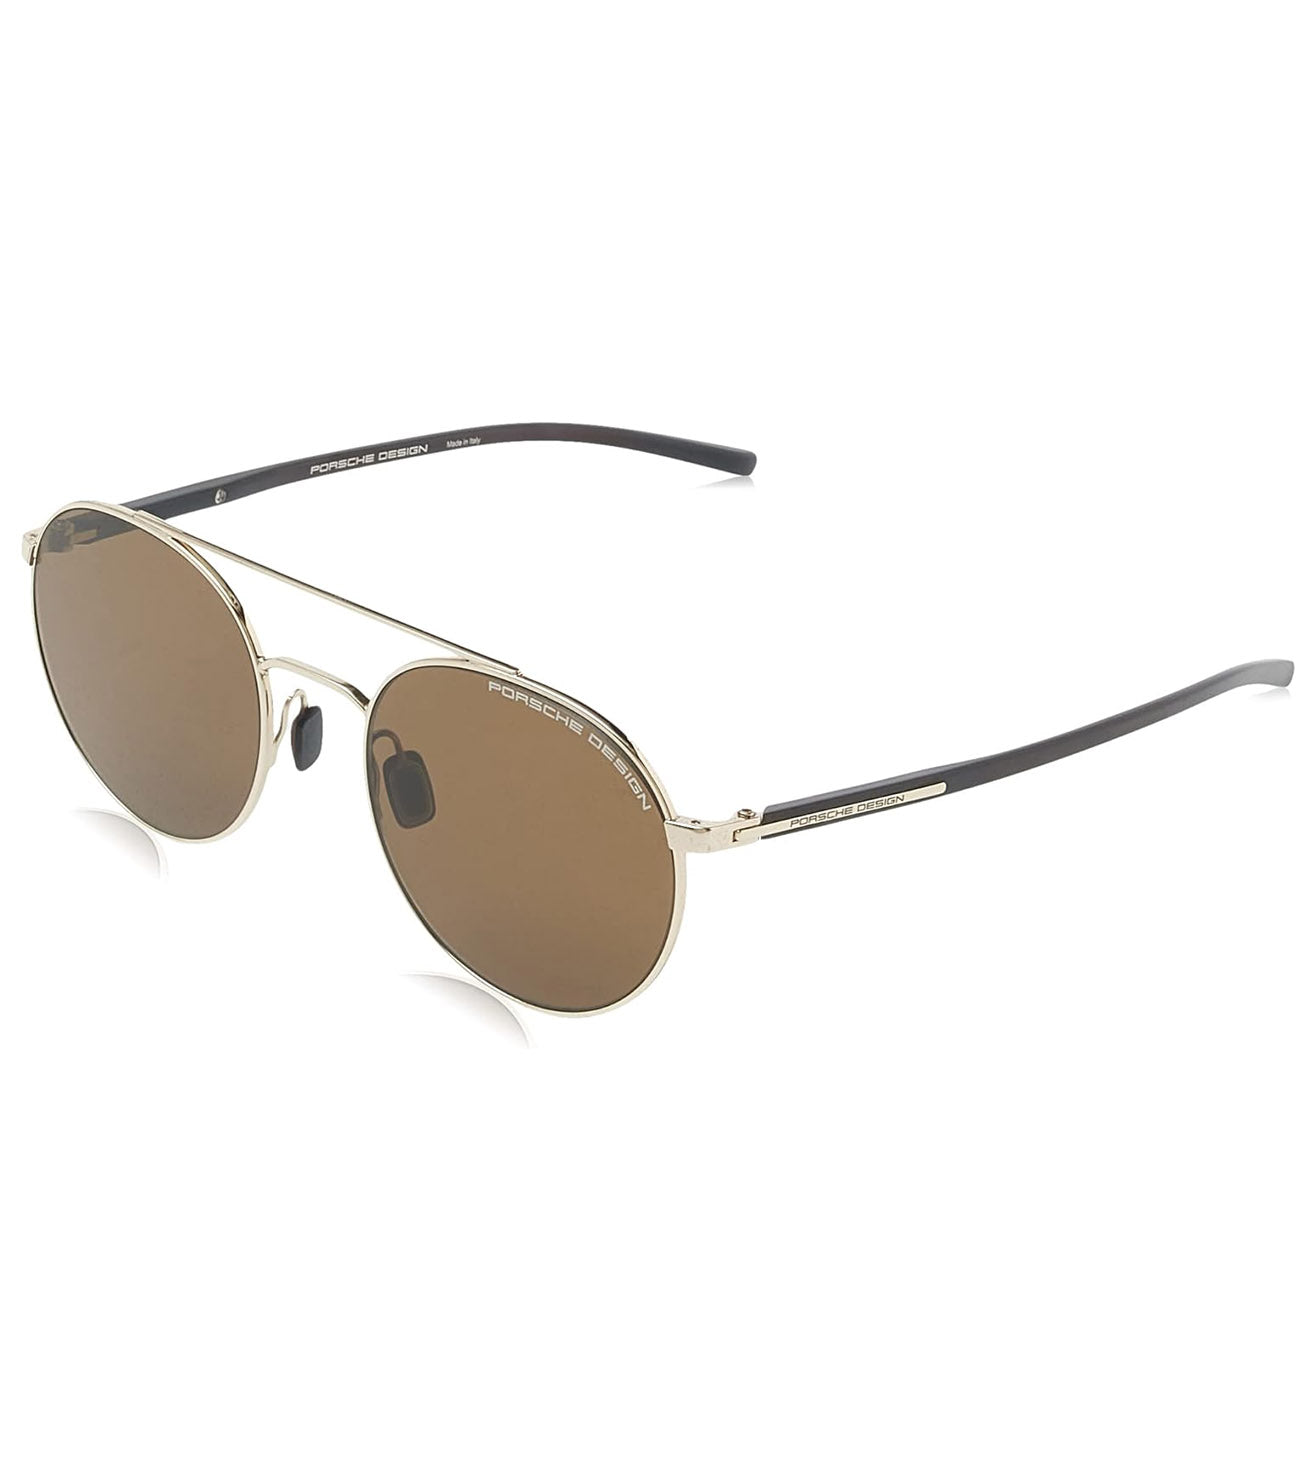 Porsche Design Unisex Brown Round Sunglasses